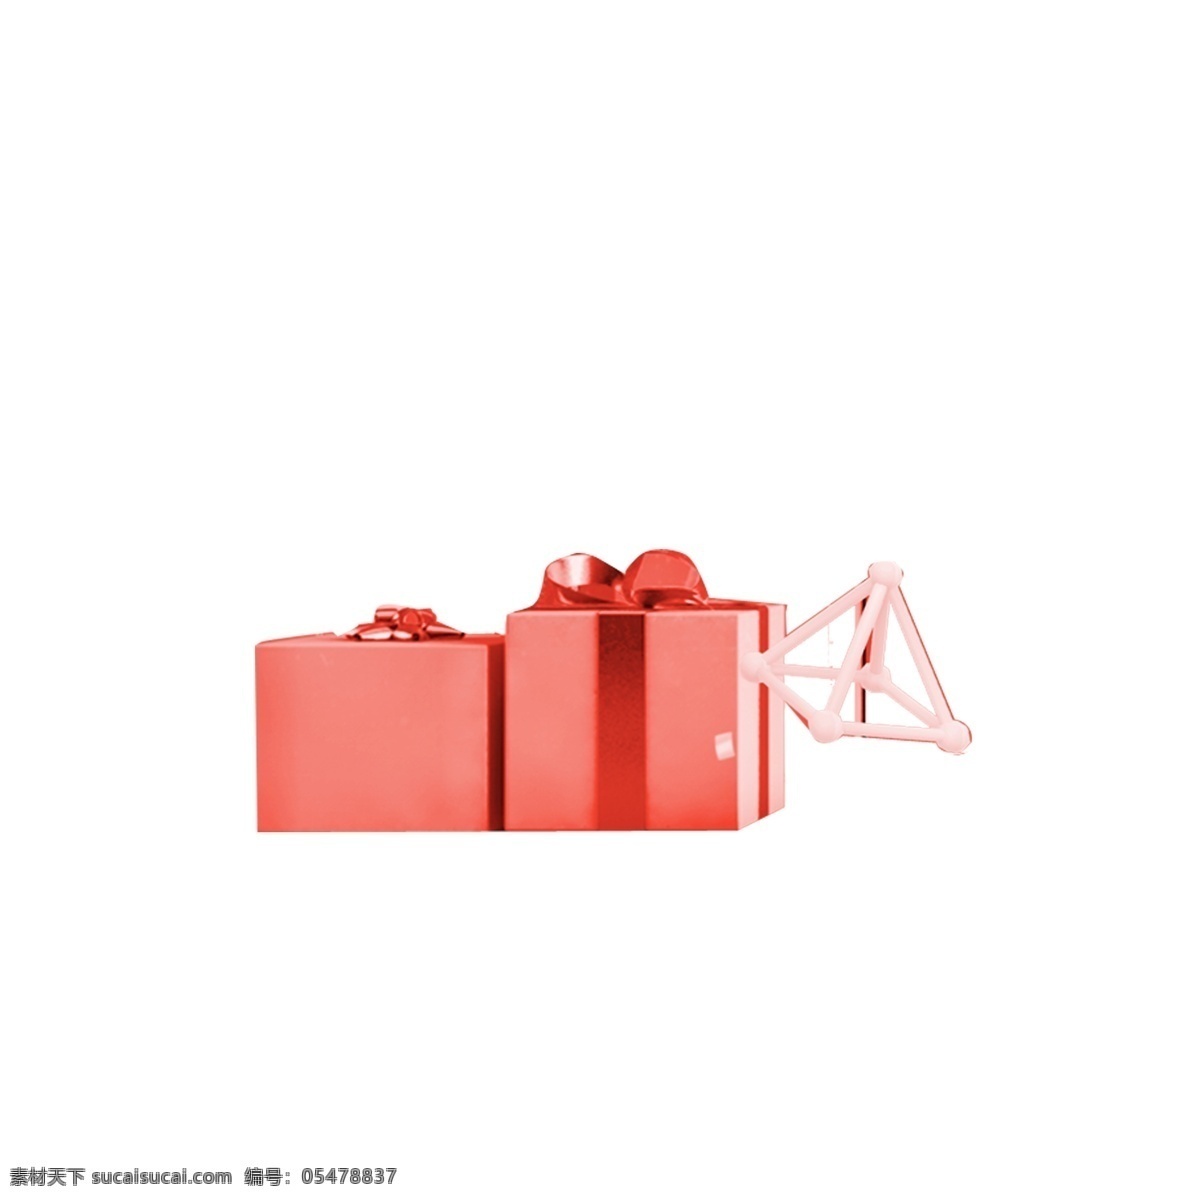 红色 礼品盒 免 抠 图 礼物包装 卡通图案 卡通插画 节日礼物 包装礼品 时尚礼品 红色的礼品盒 免抠图